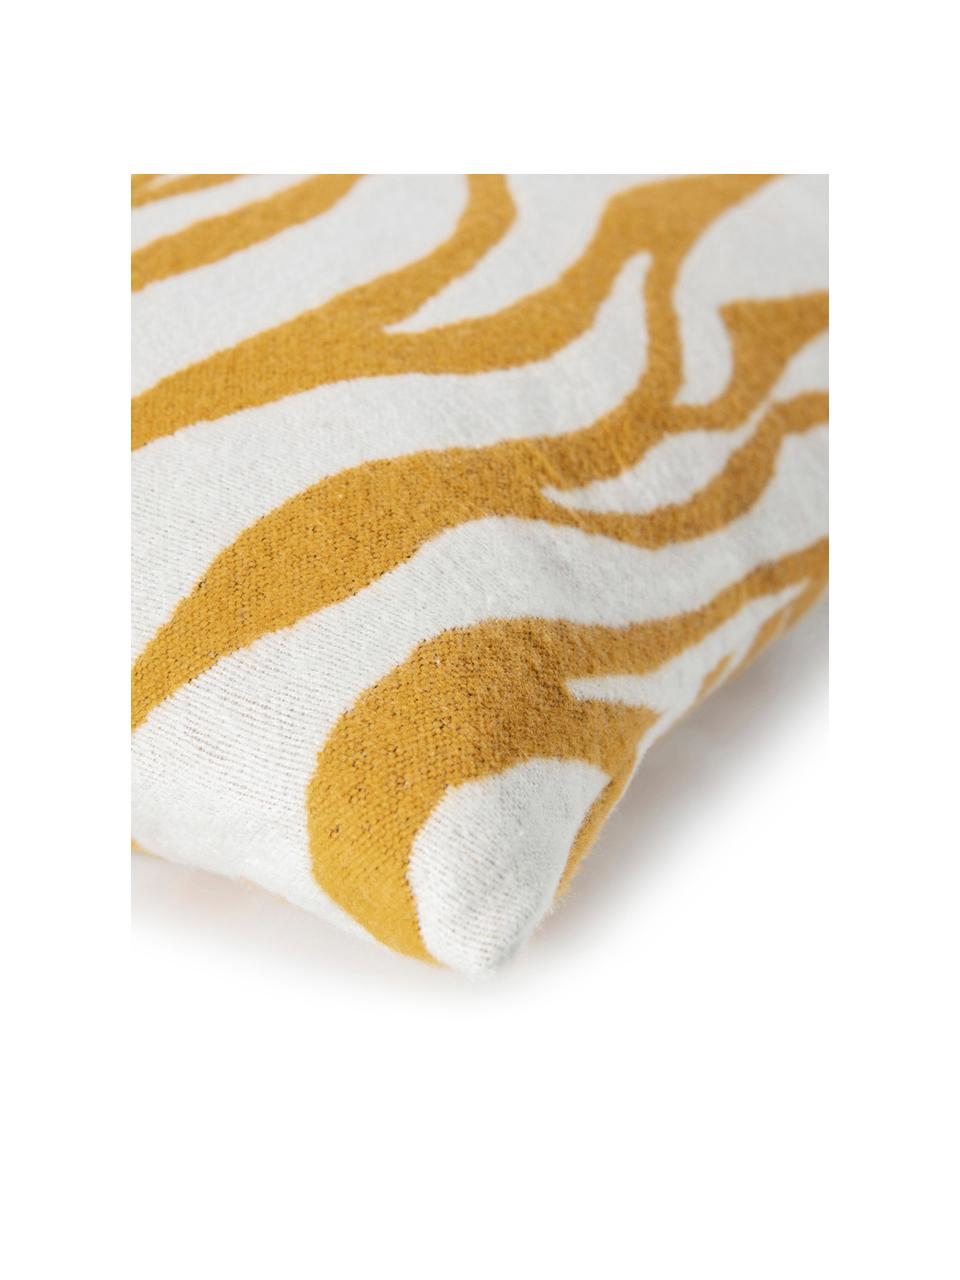 Kussenhoes Sana met zebra print in geel/wit, Weeftechniek: jacquard, Mosterdgeel, wit, 50 x 50 cm